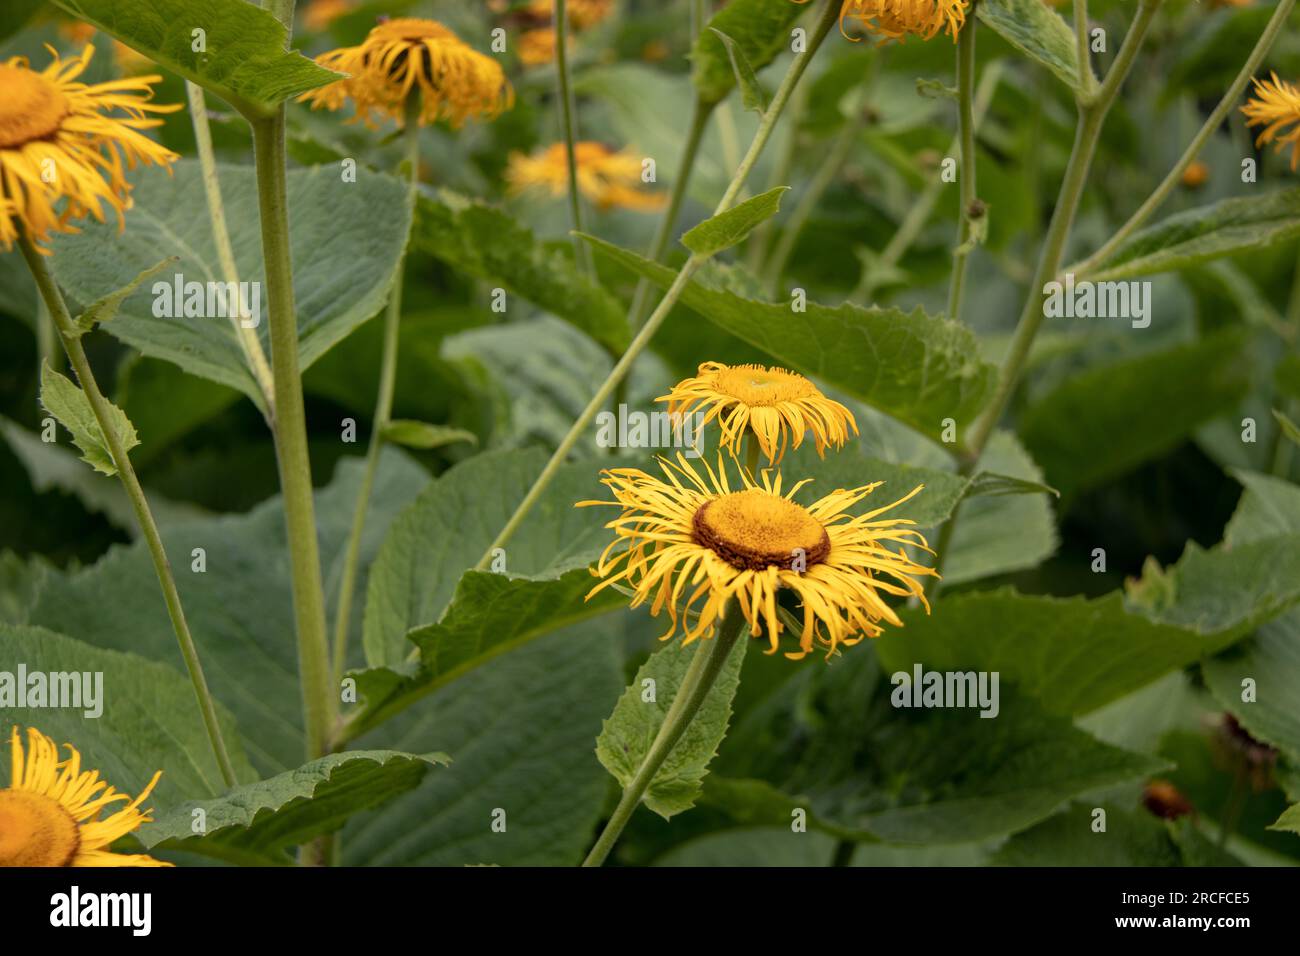 Wunderschöne Aufnahmen der Natur und Blumen, aufgenommen mit der Kamera Stockfoto